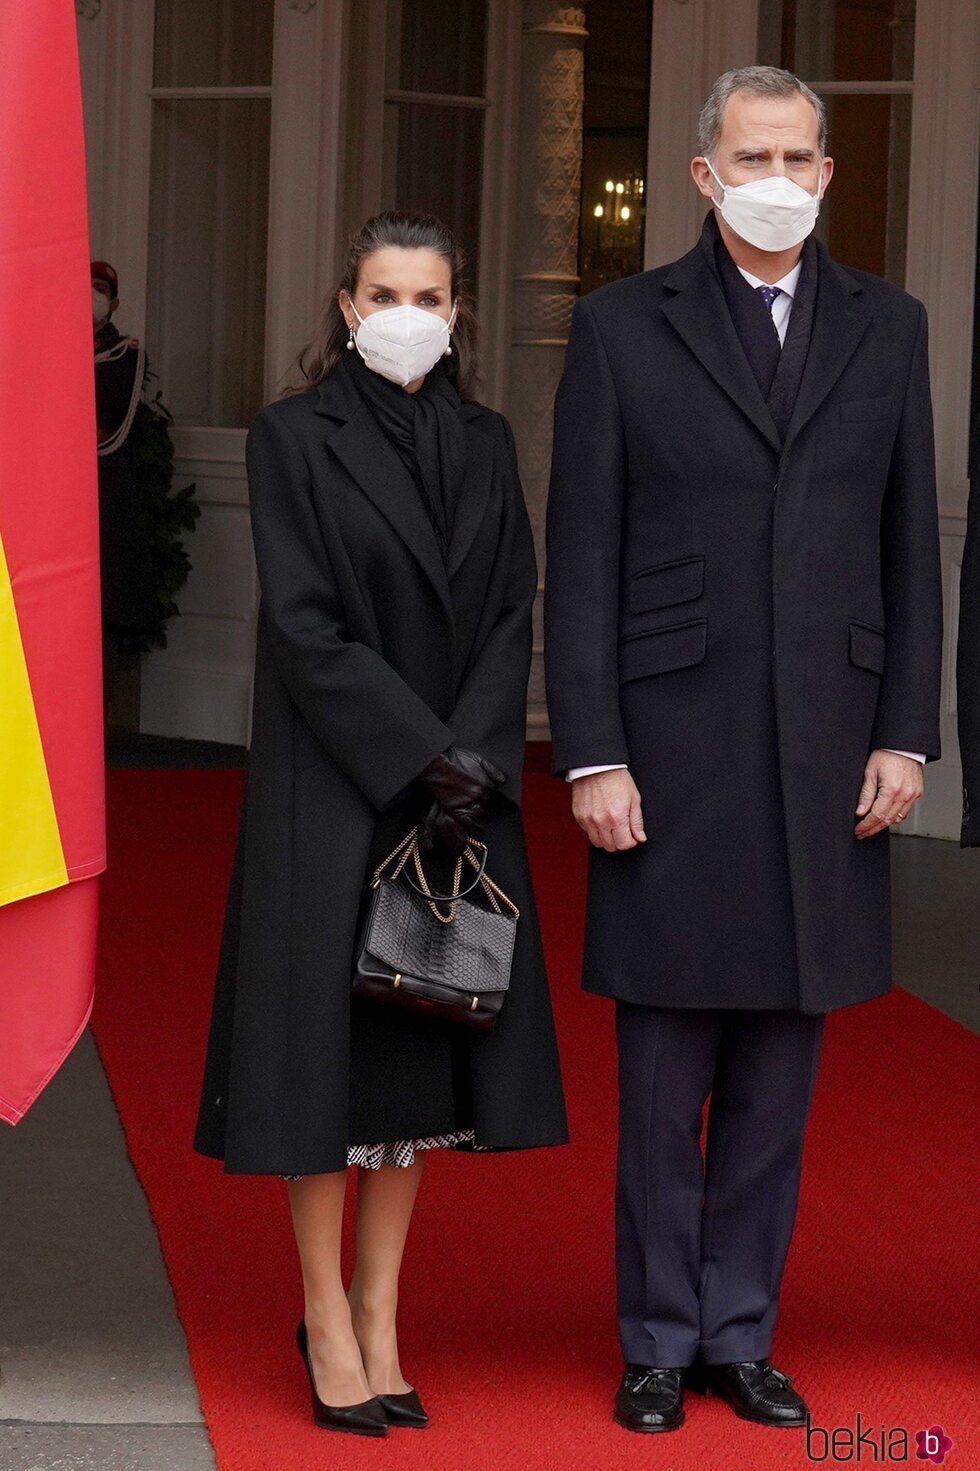 Los Reyes Felipe y Letizia en la recepción oficial por su viaje a Viena